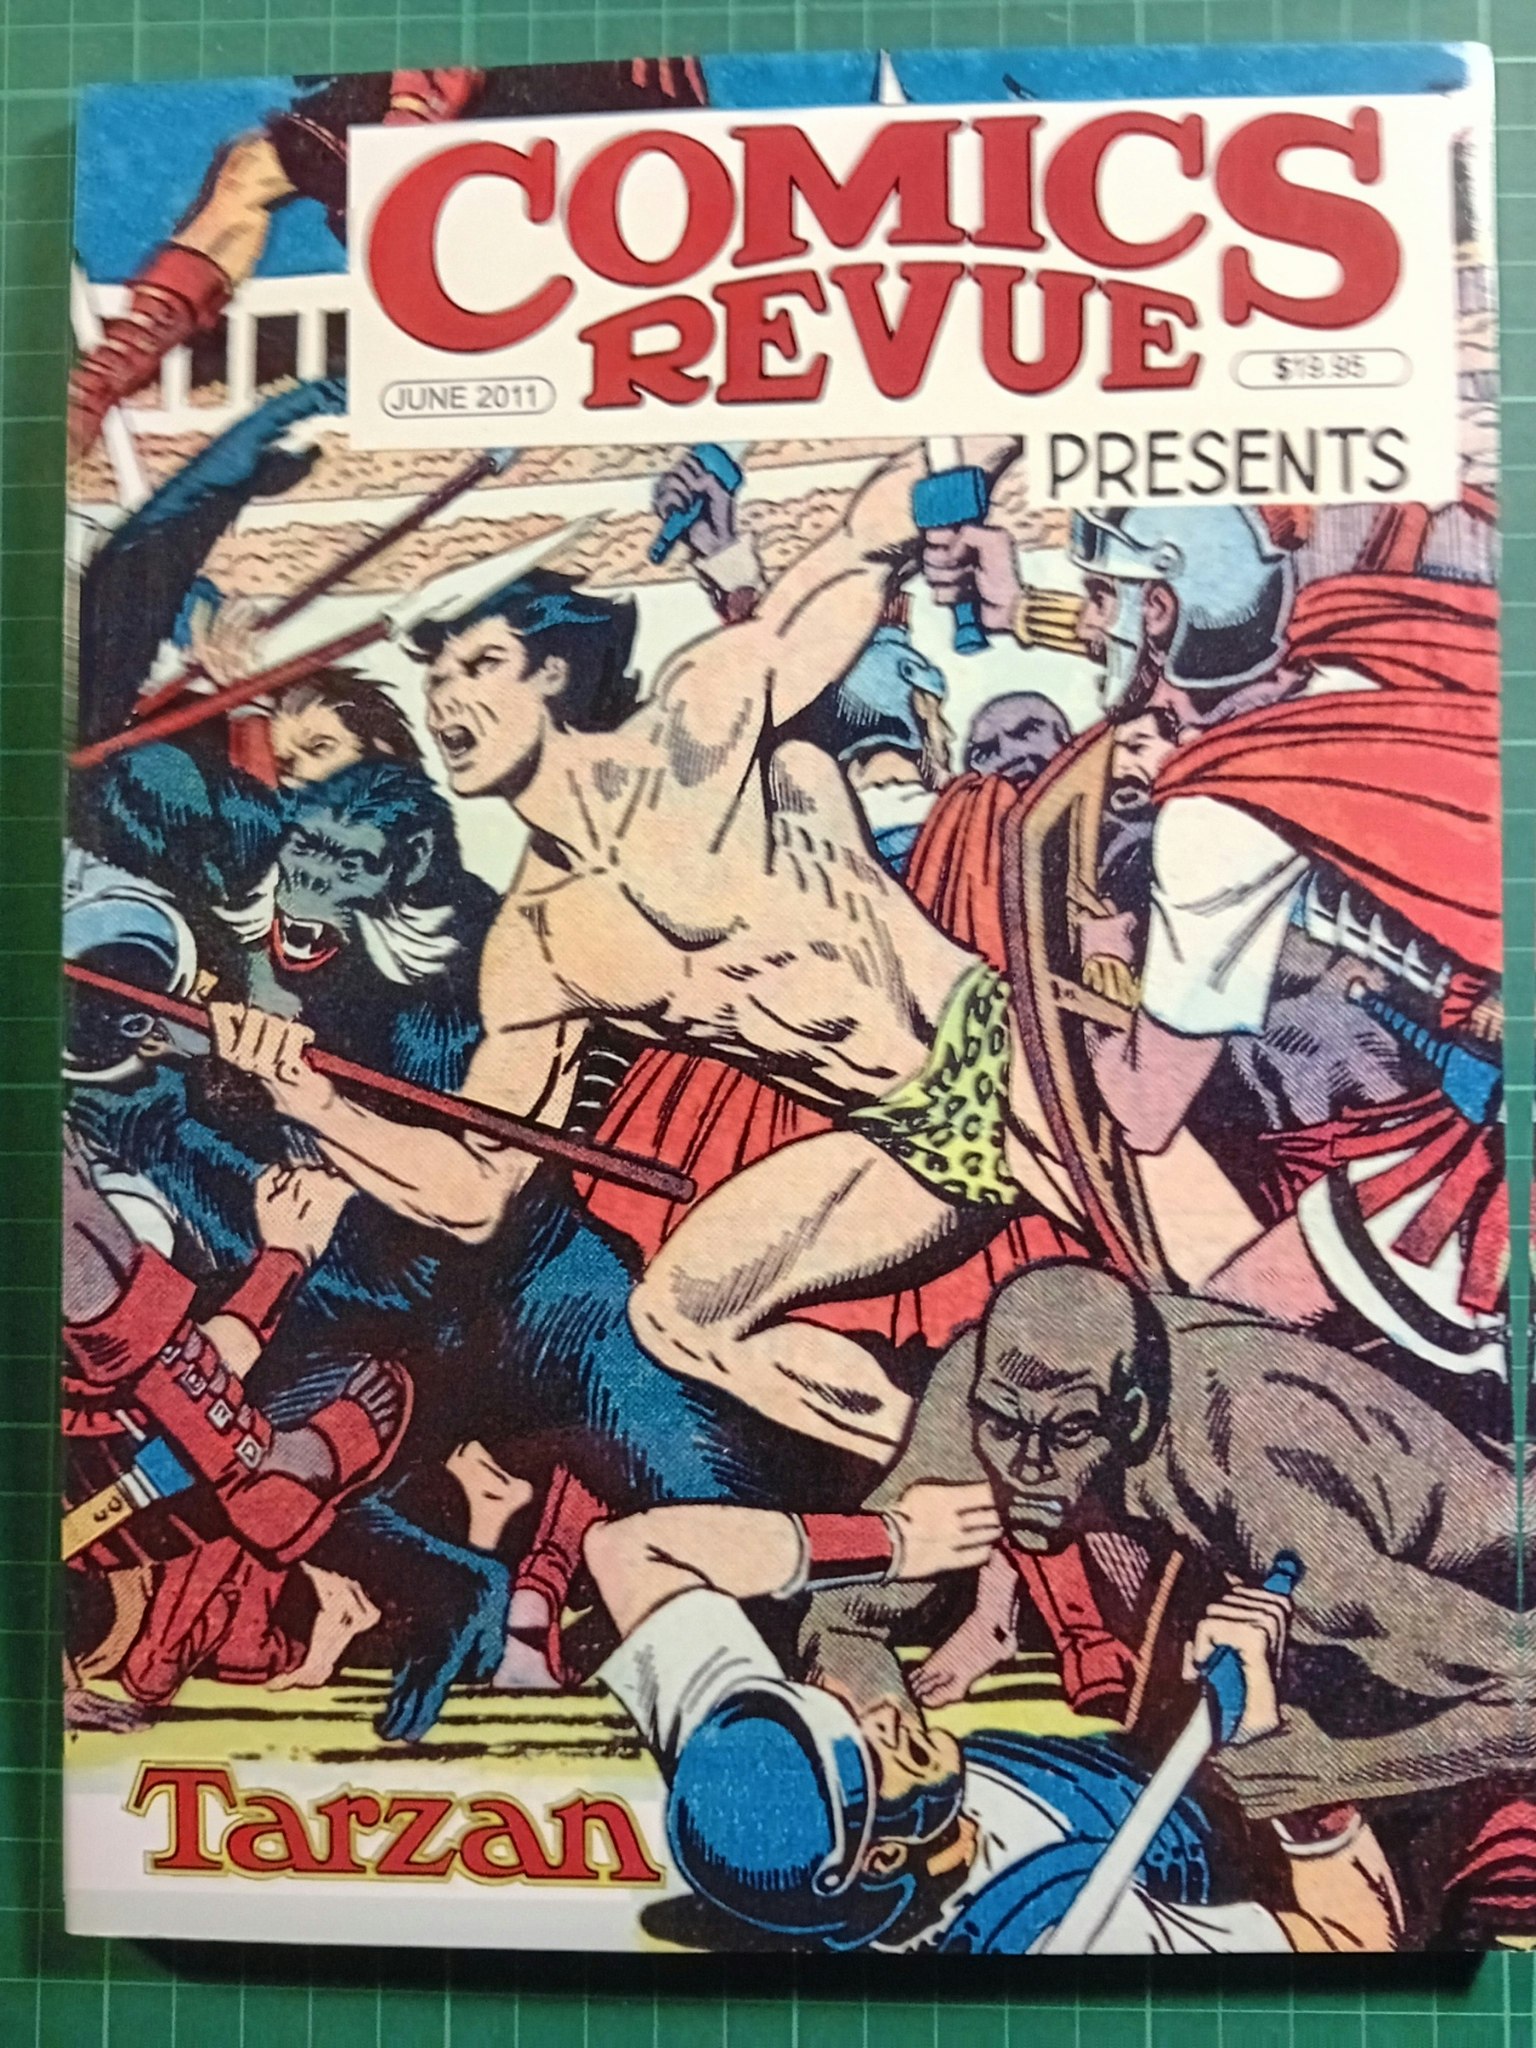 Comics revue #301+302